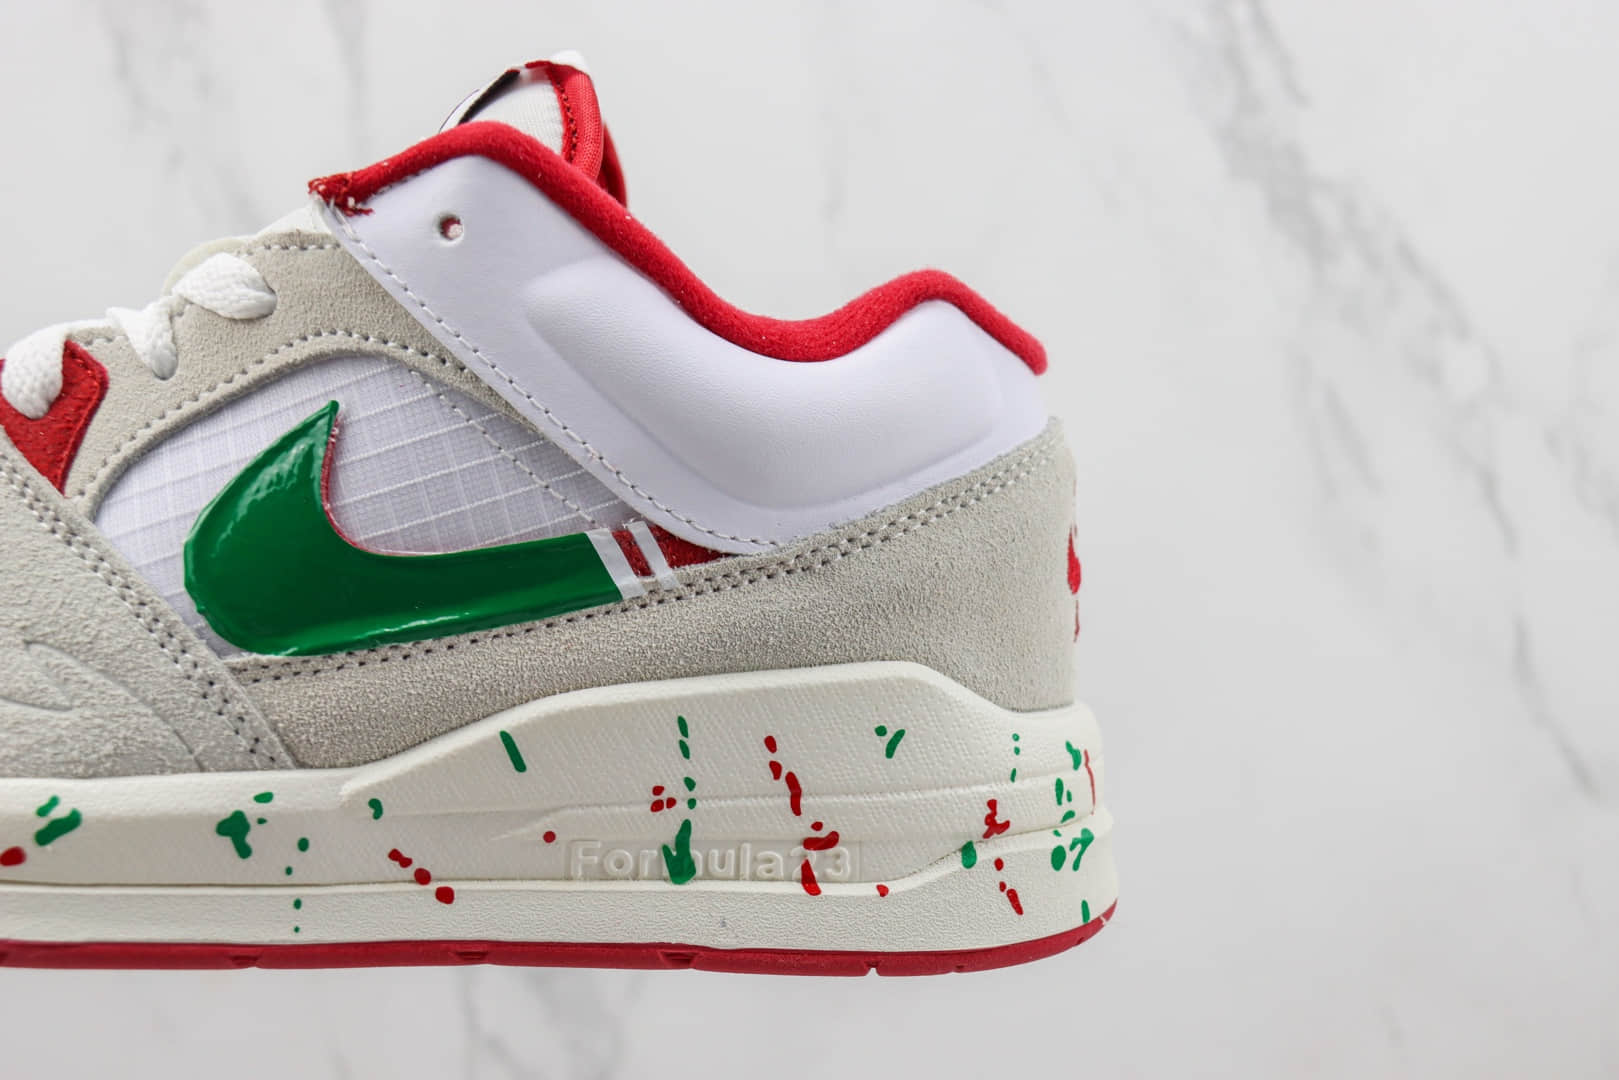 耐克Nike Jordan Stadium 90纯原版本白灰红绿复古跑鞋 莆田耐克货源 货号：DX4397-106